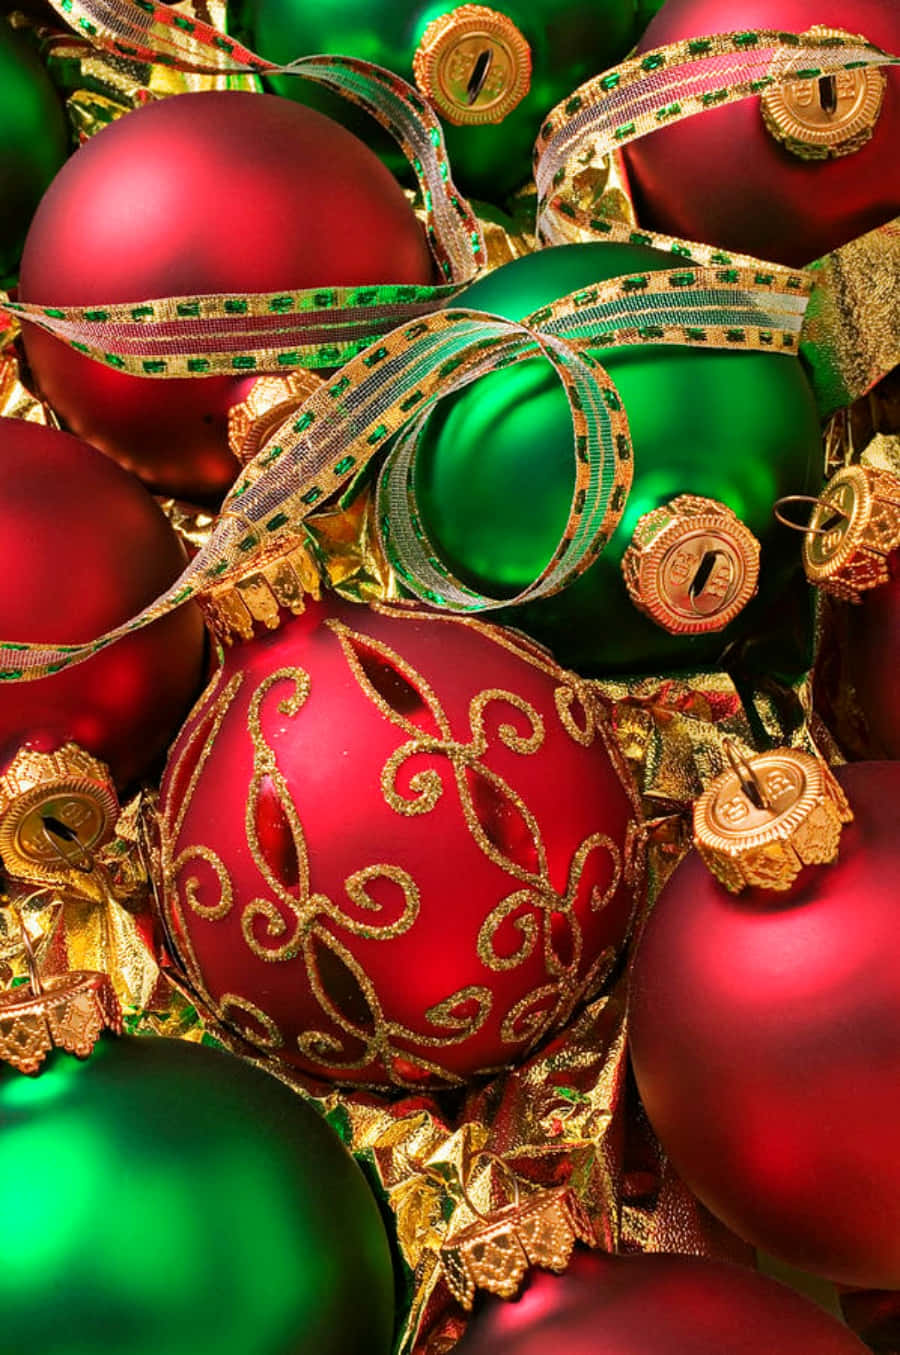 Nyd en traditionel rød og grøn jul med disse festlige dekorationer! Wallpaper